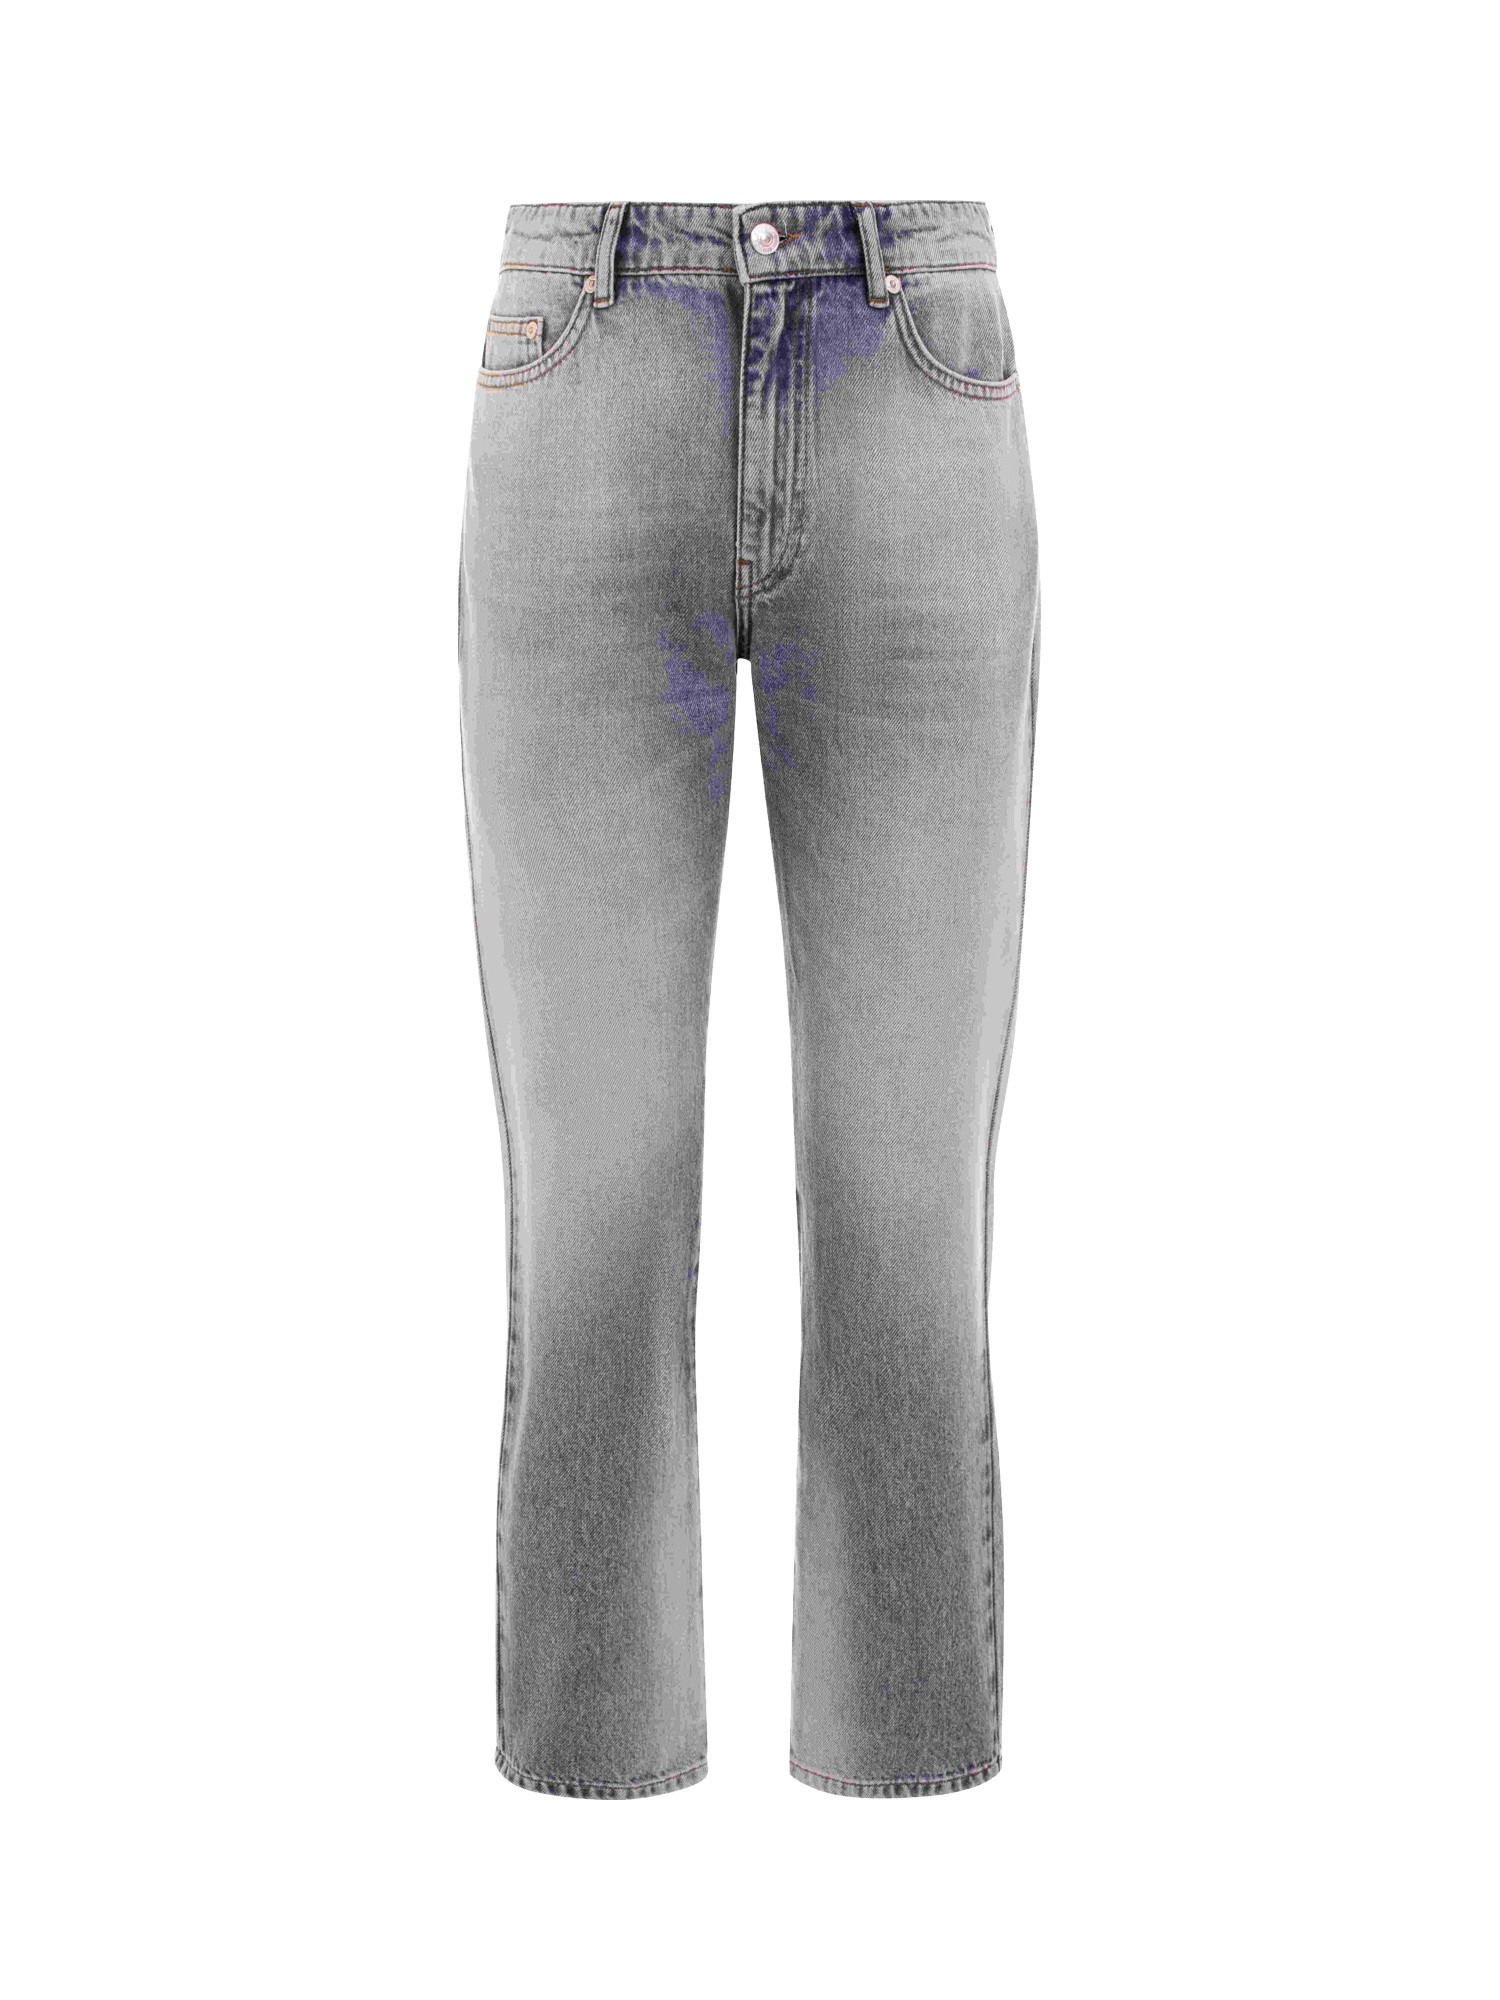 Chiara Ferragni - 5-pocket jeans, Grey, large image number 0